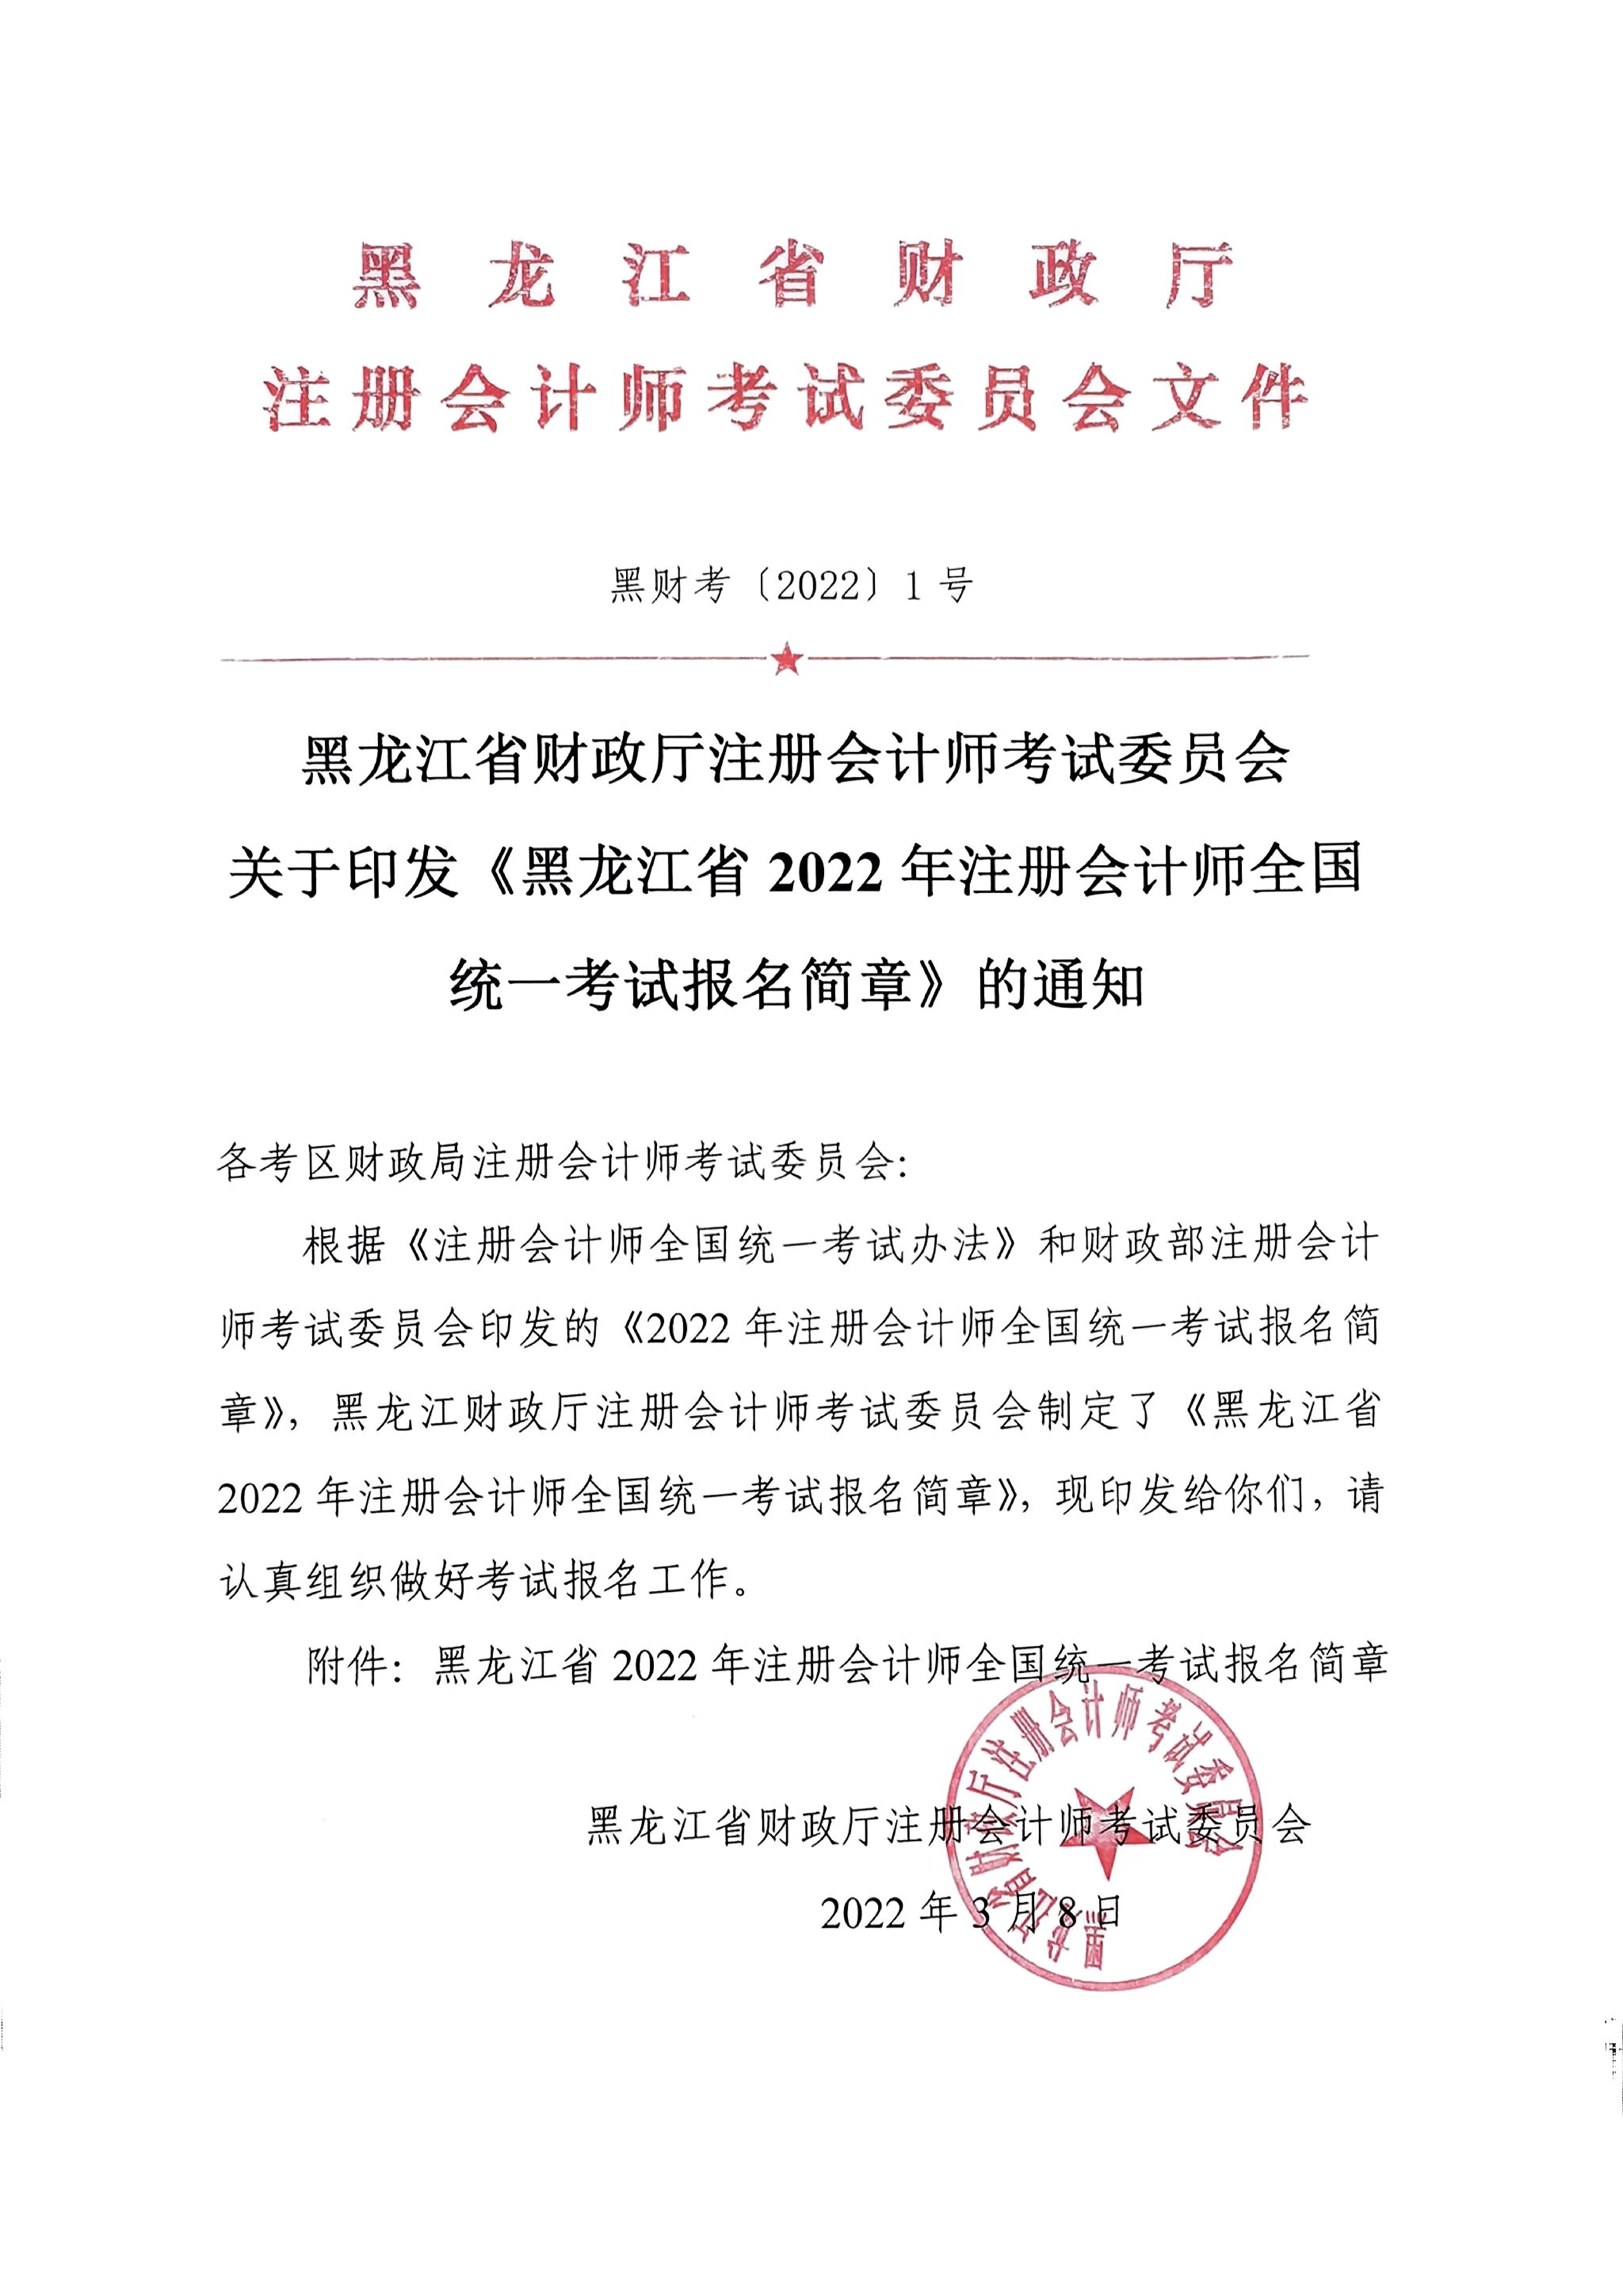 《黑龙江省2022年注册会计师全国统一考试报名简章》的通知